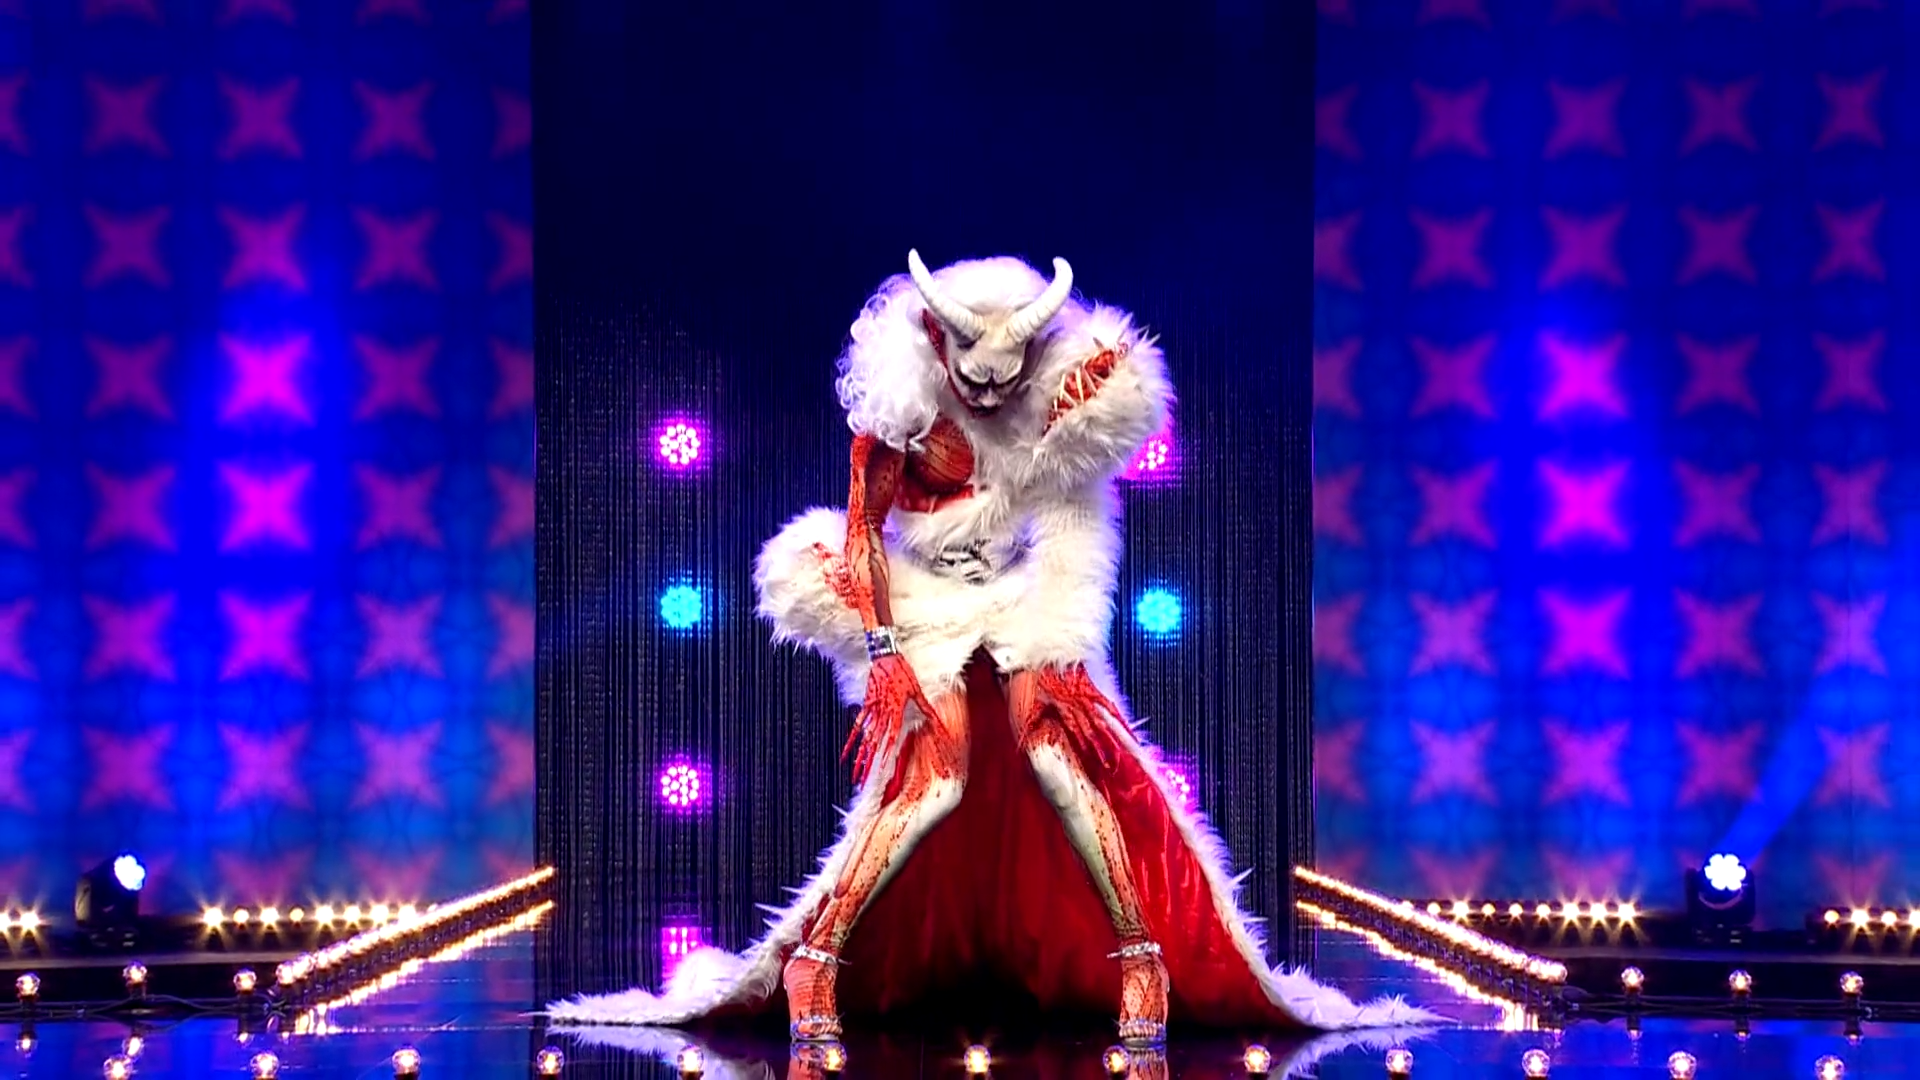 Cena de Drag Race Holland, mostra a drag Keta Minaj abaixada na passarela, usando uma roupa bestial, com ilusão de carne viva na pele e uma cobertura monstruosa e branca, como uma fera, com chifres brancos.